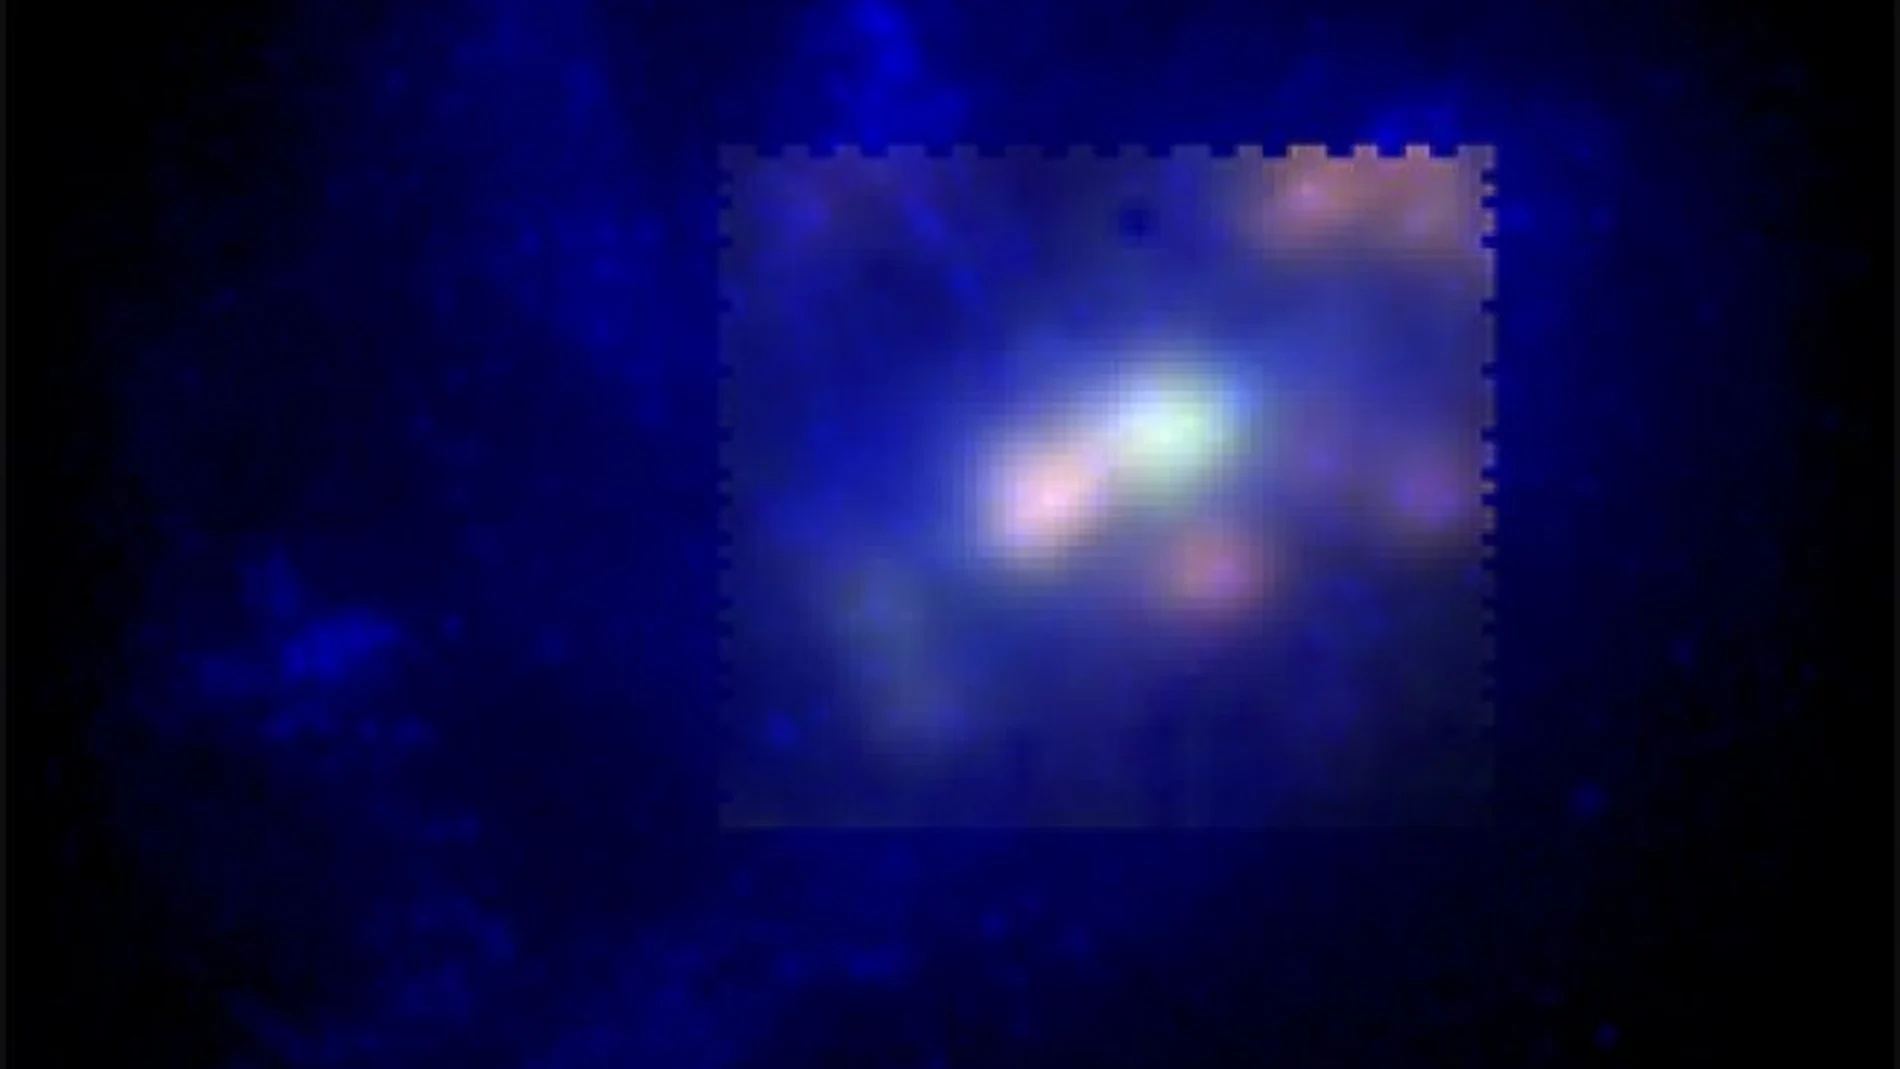 Imagen de falso color de la galaxia UCM2325+2318. En verde y rojo se muestra la emisión del nitrógeno y del hidrógeno presentes, respectivamente, en el gas caliente (10,000 grados) de esta galaxia. En azul se muestra la emisión de las estrellas a partir de una imagen del Telescopio Espacial Hubble.